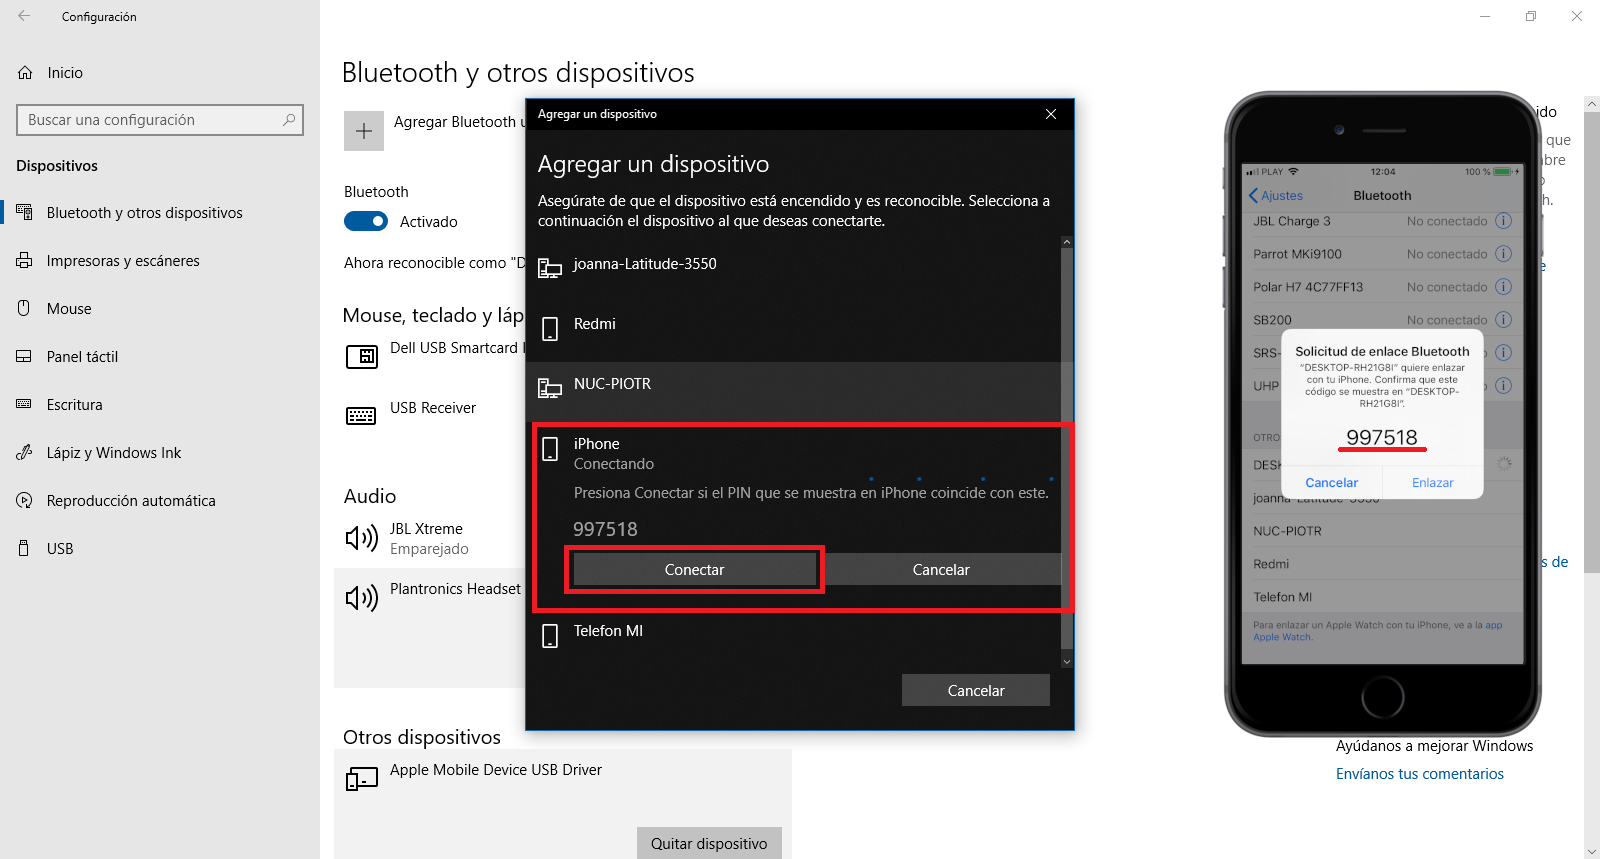 bloqueo dinamico para que tu PC con Windows 10 pueda se bloquee automaticamente